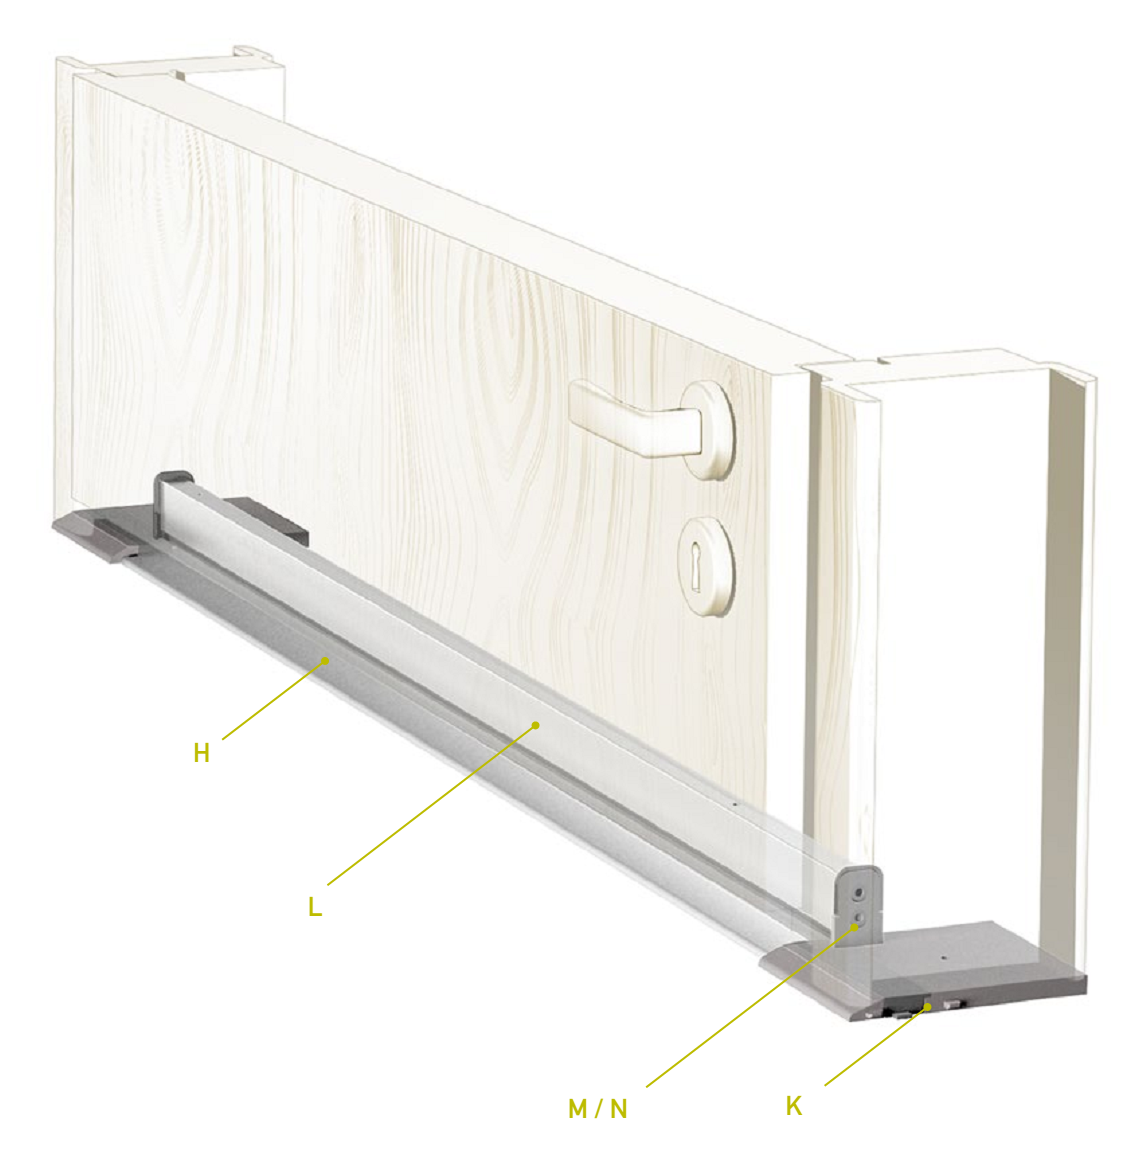 CCE -  Soglia TERMO ULISSE WOOD per porta d'ingresso in legno con taglio termico - col. ARGENTO - l. 71 - h. 9 - l. max 1330